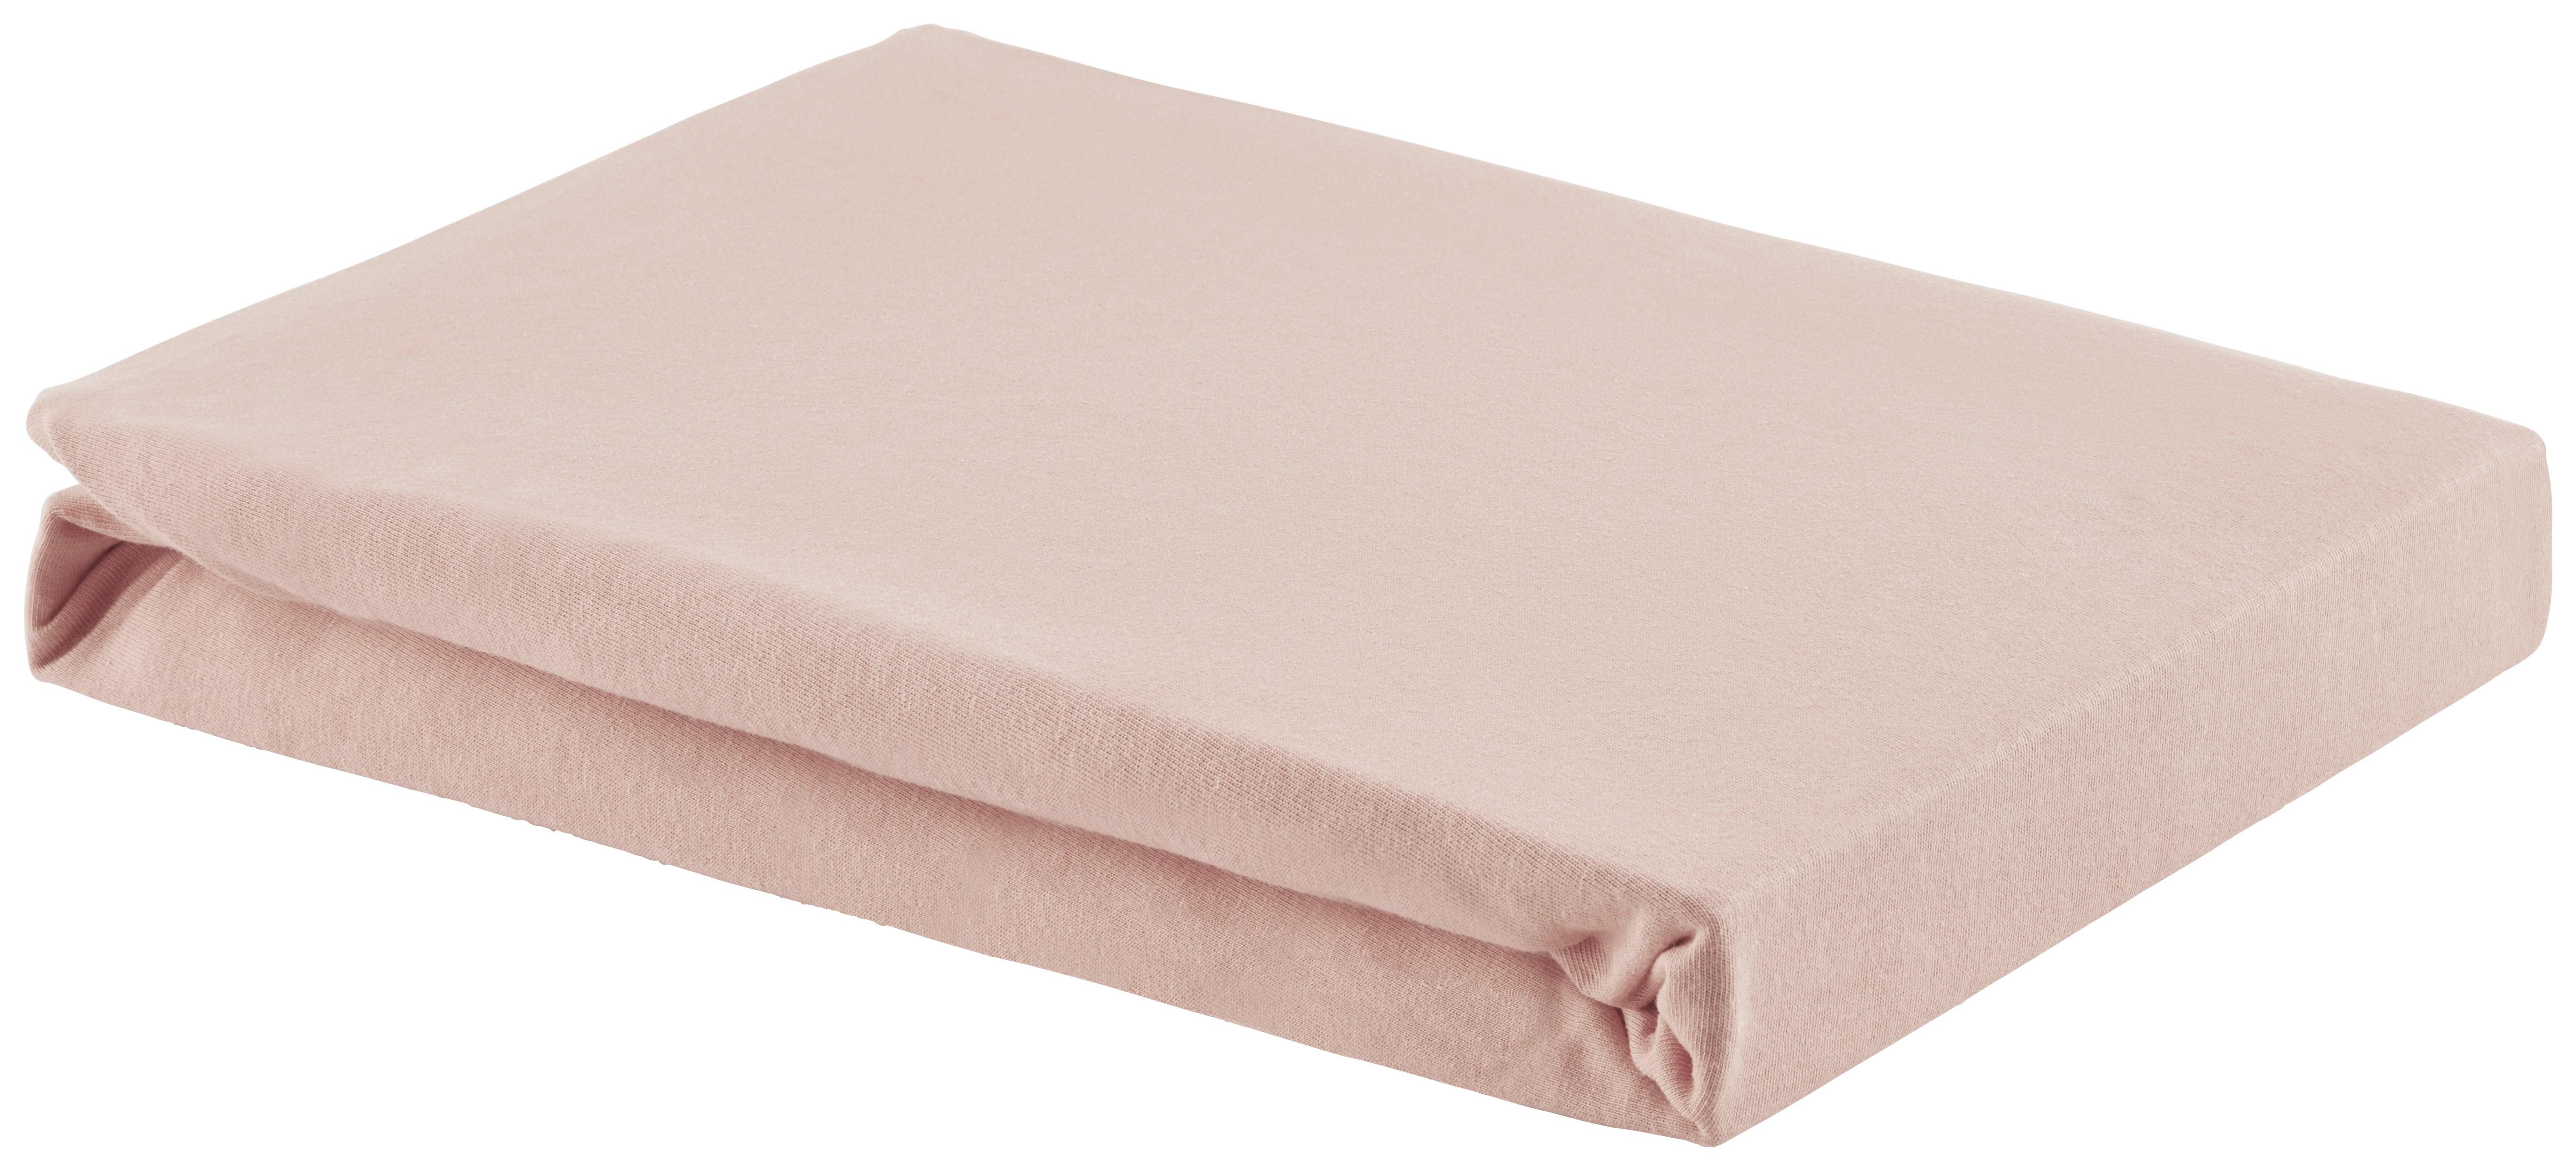 Elastické Prostěradlo Basic, 100/200 Cm - růžová, textil (100/200cm) - Modern Living